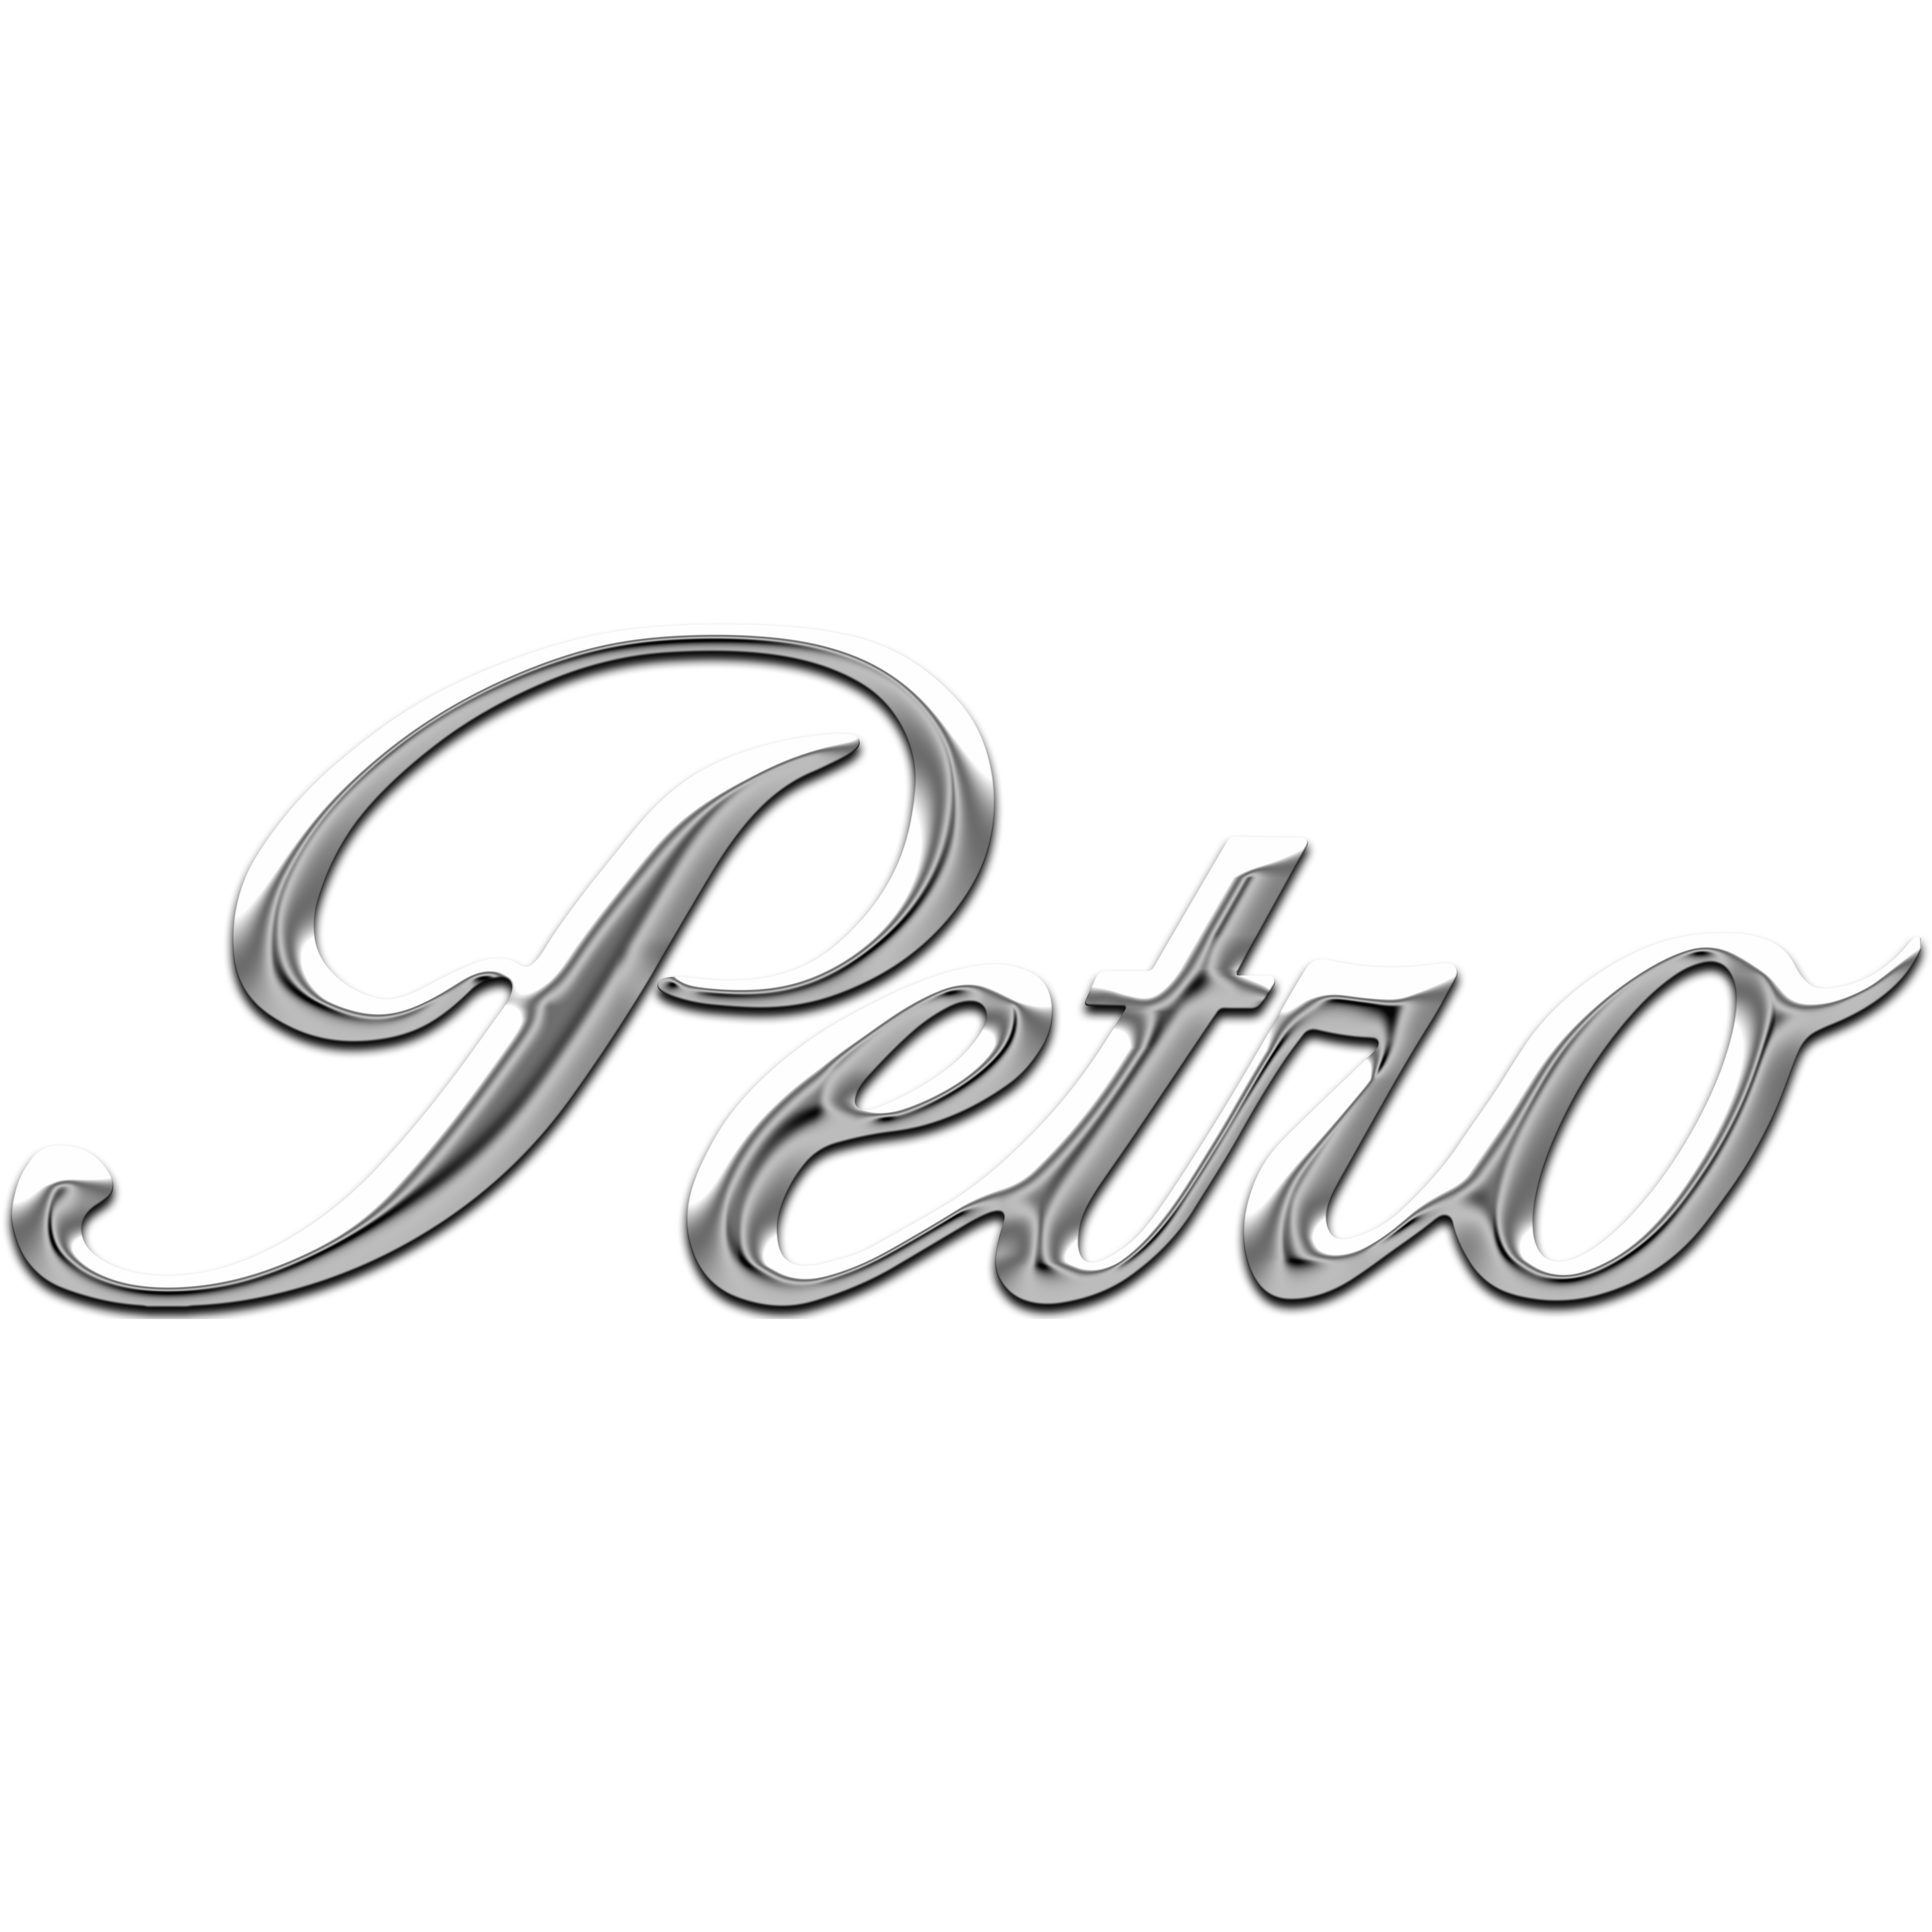 Petro Chevrolet - Pascagoula, MS 39567 - (228)813-0102 | ShowMeLocal.com